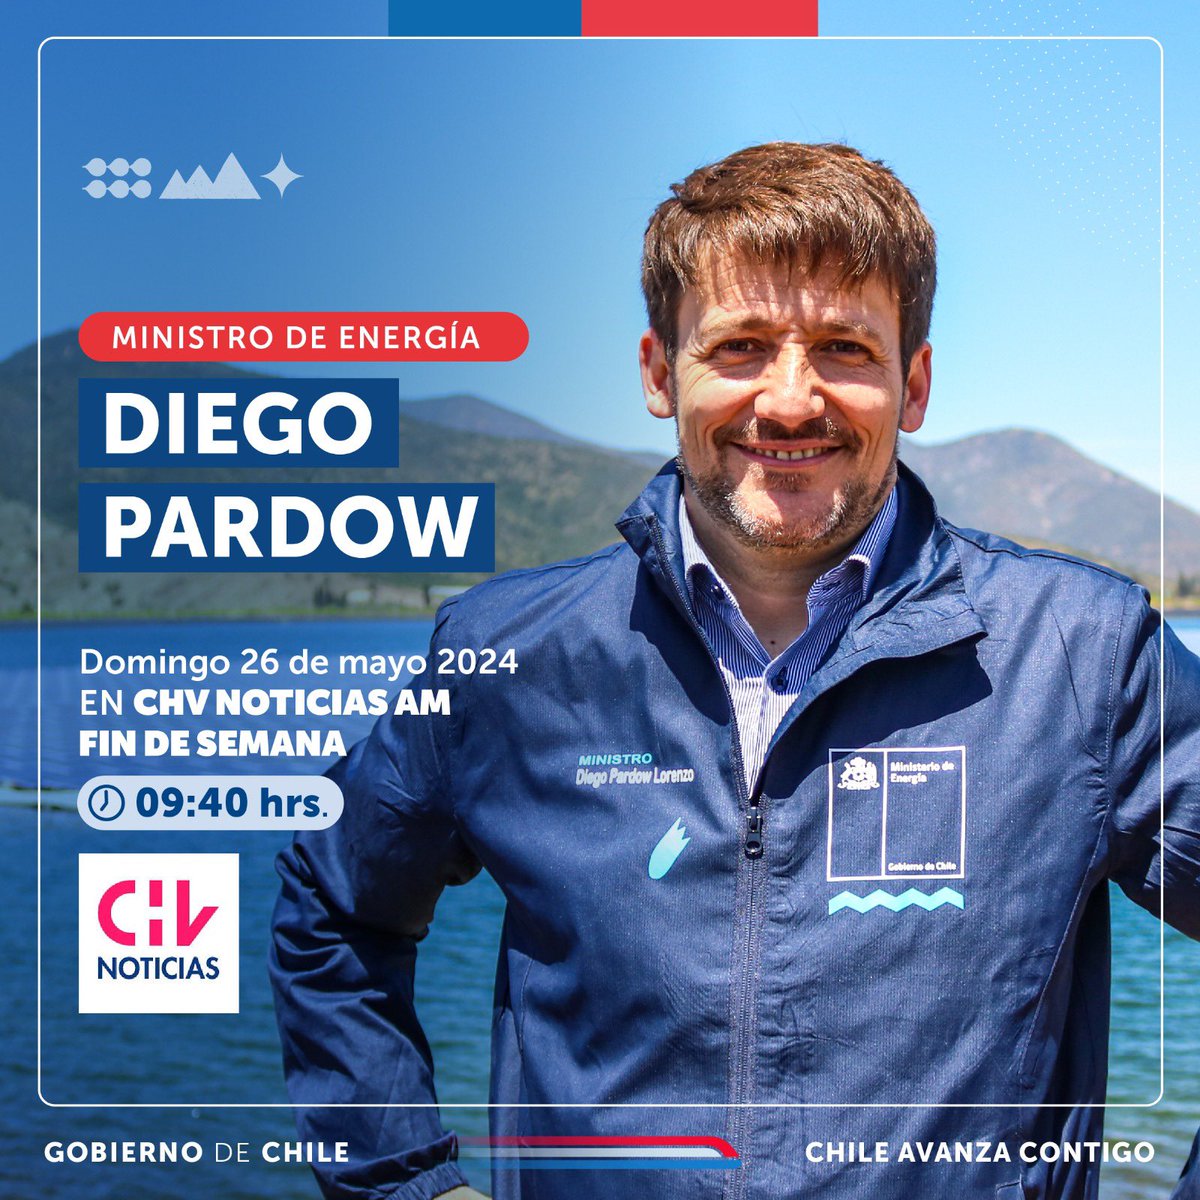 Hoy el ministro @DiegoPardow estará desde las 09:40 horas conversando en @chvnoticias. ¡No te lo pierdas! 🍃⚡️